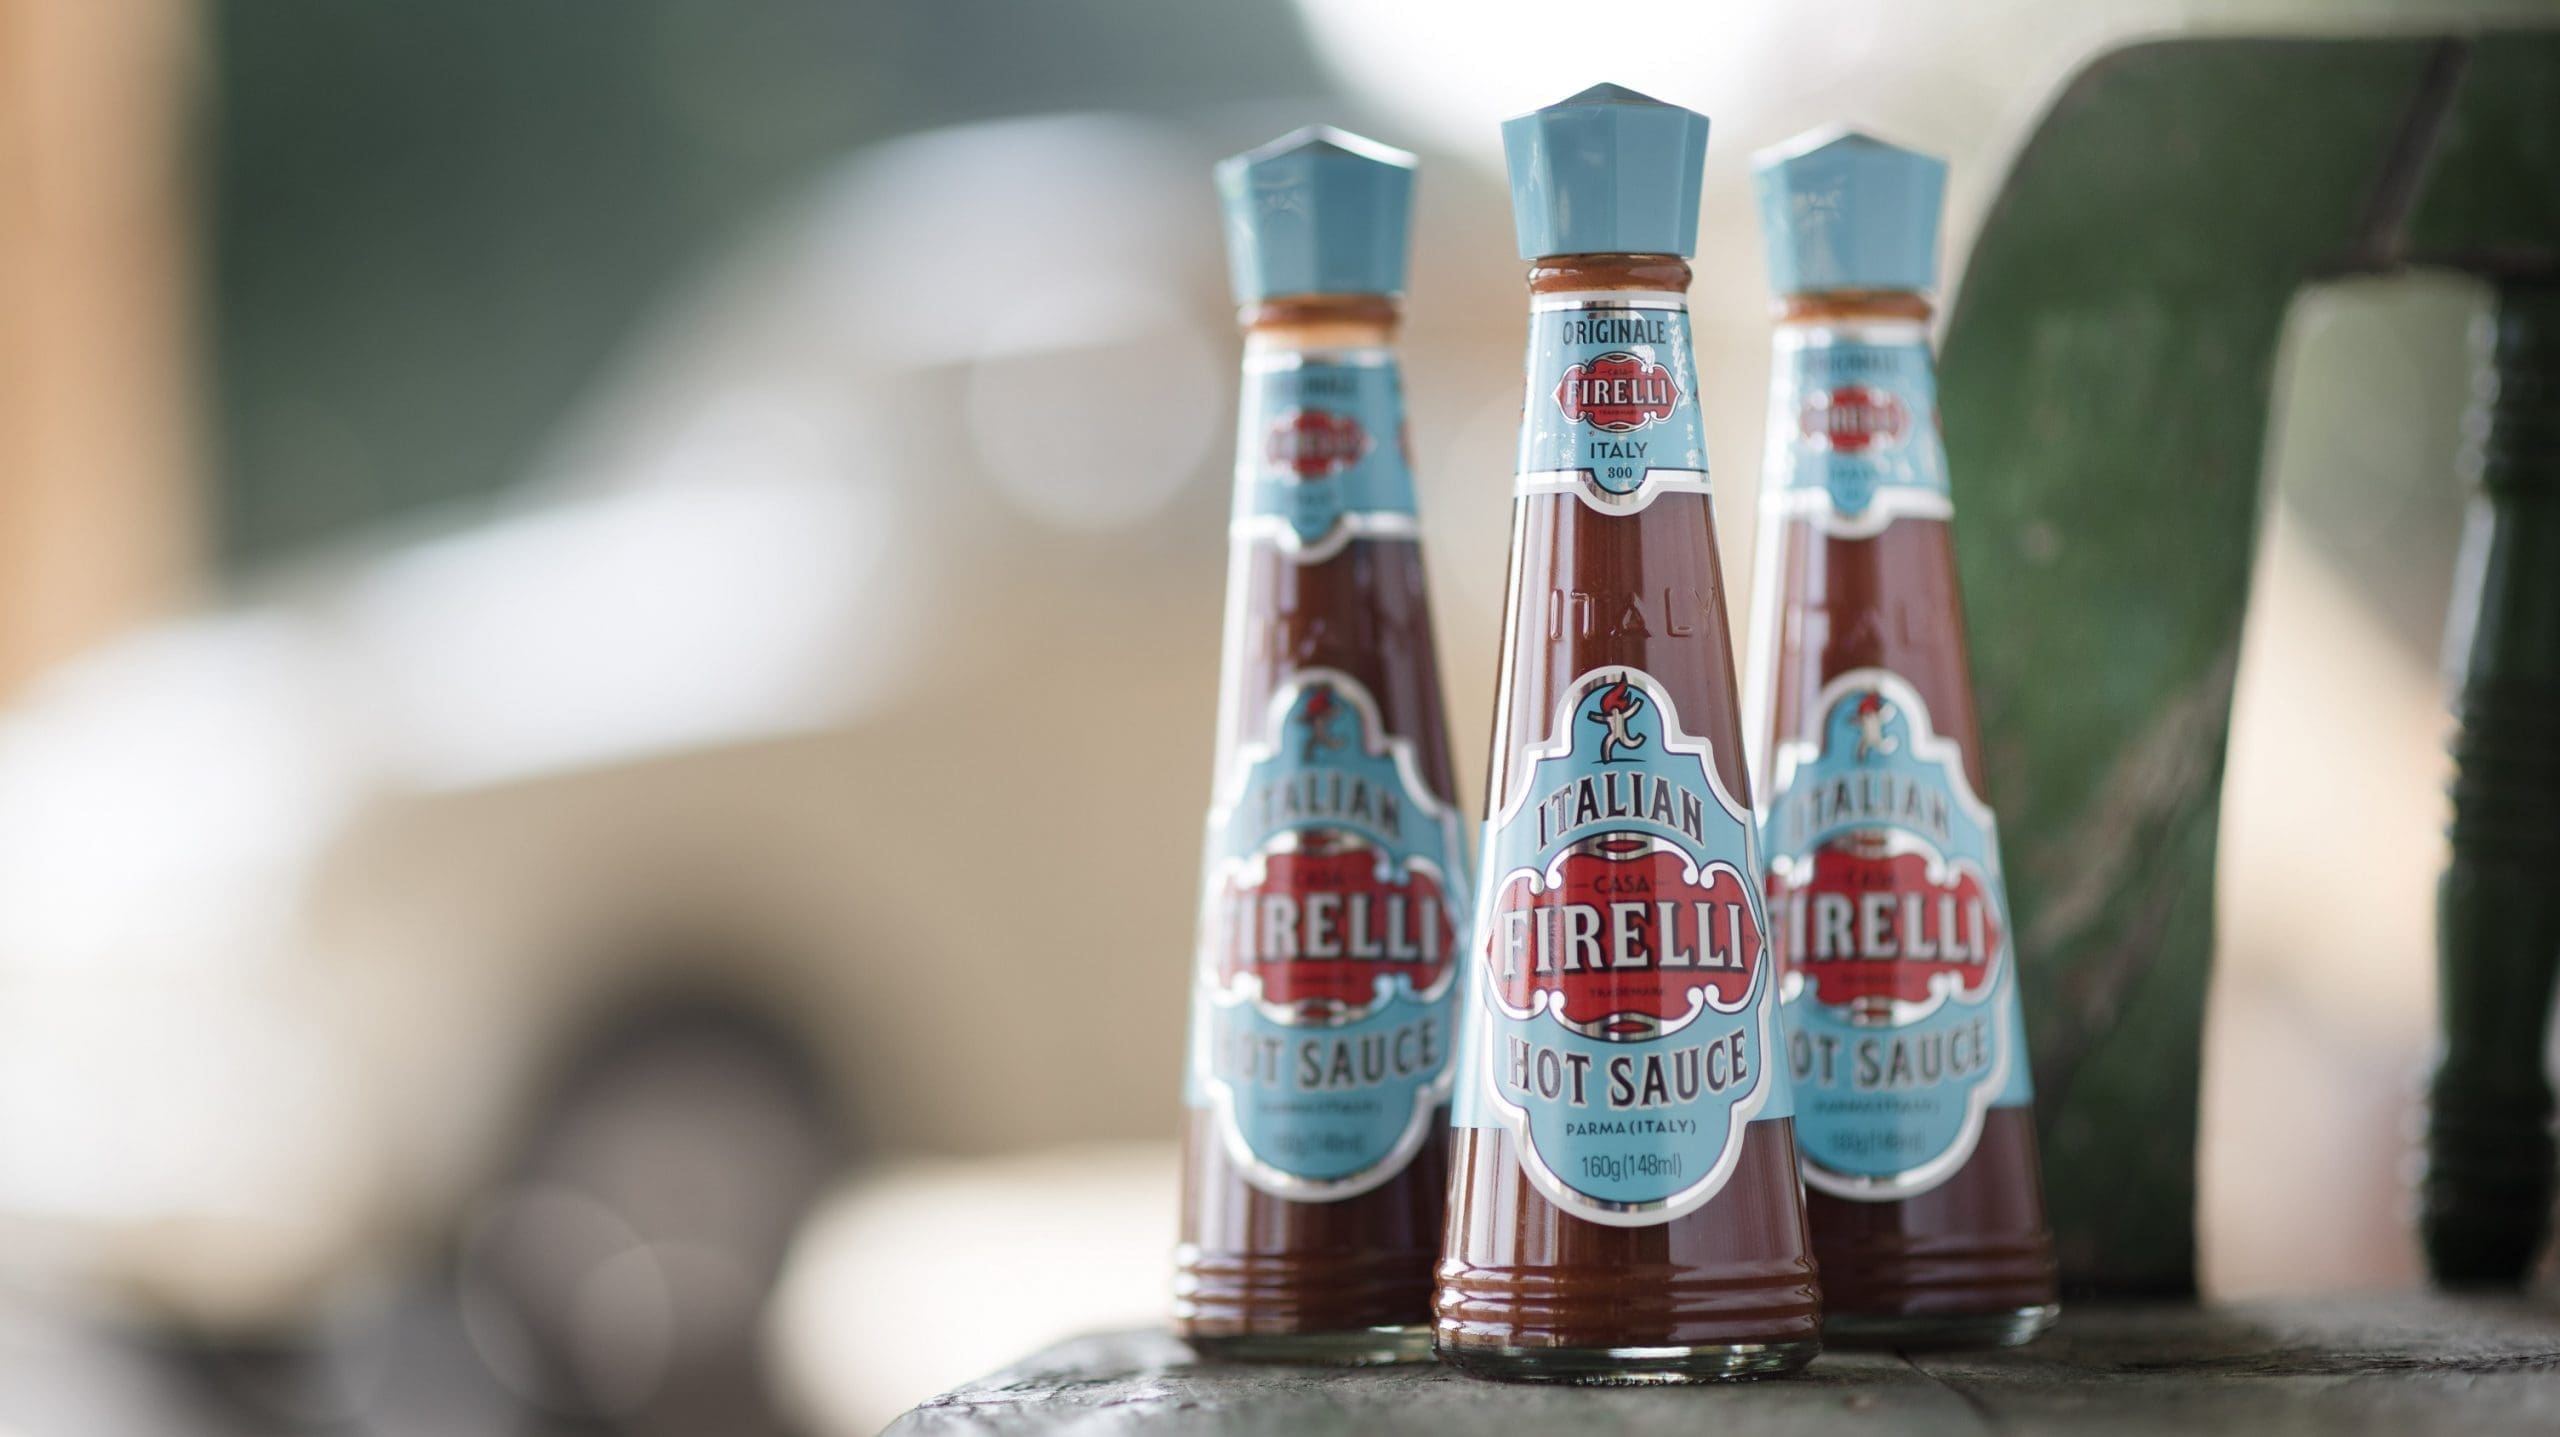 3 bottles of firelli hot sauce